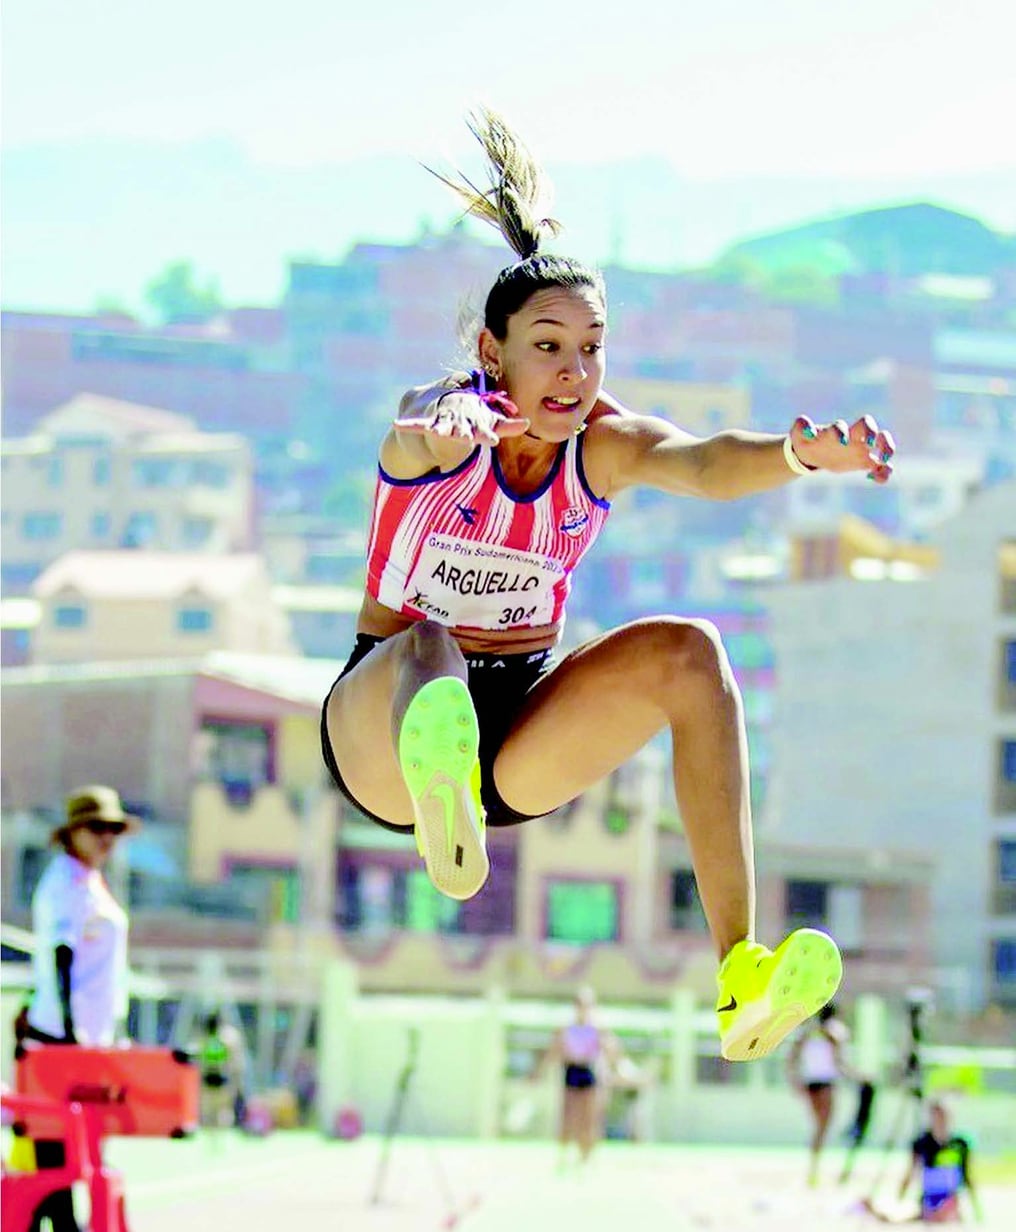 Atletismo: o esporte para corredores de elite - Azibo